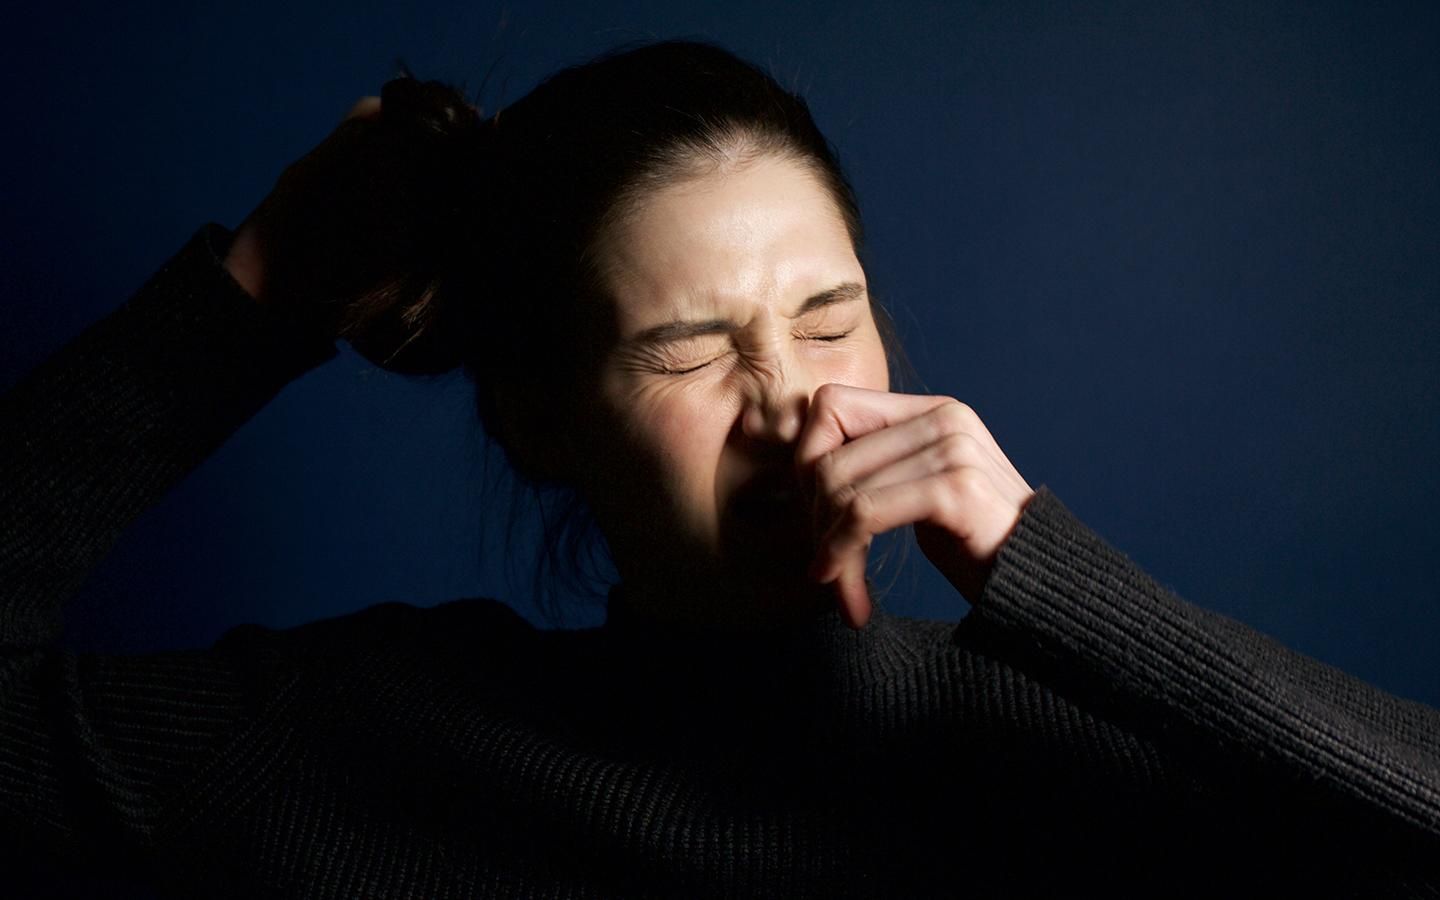 Чихание может навредить здоровью: исследование